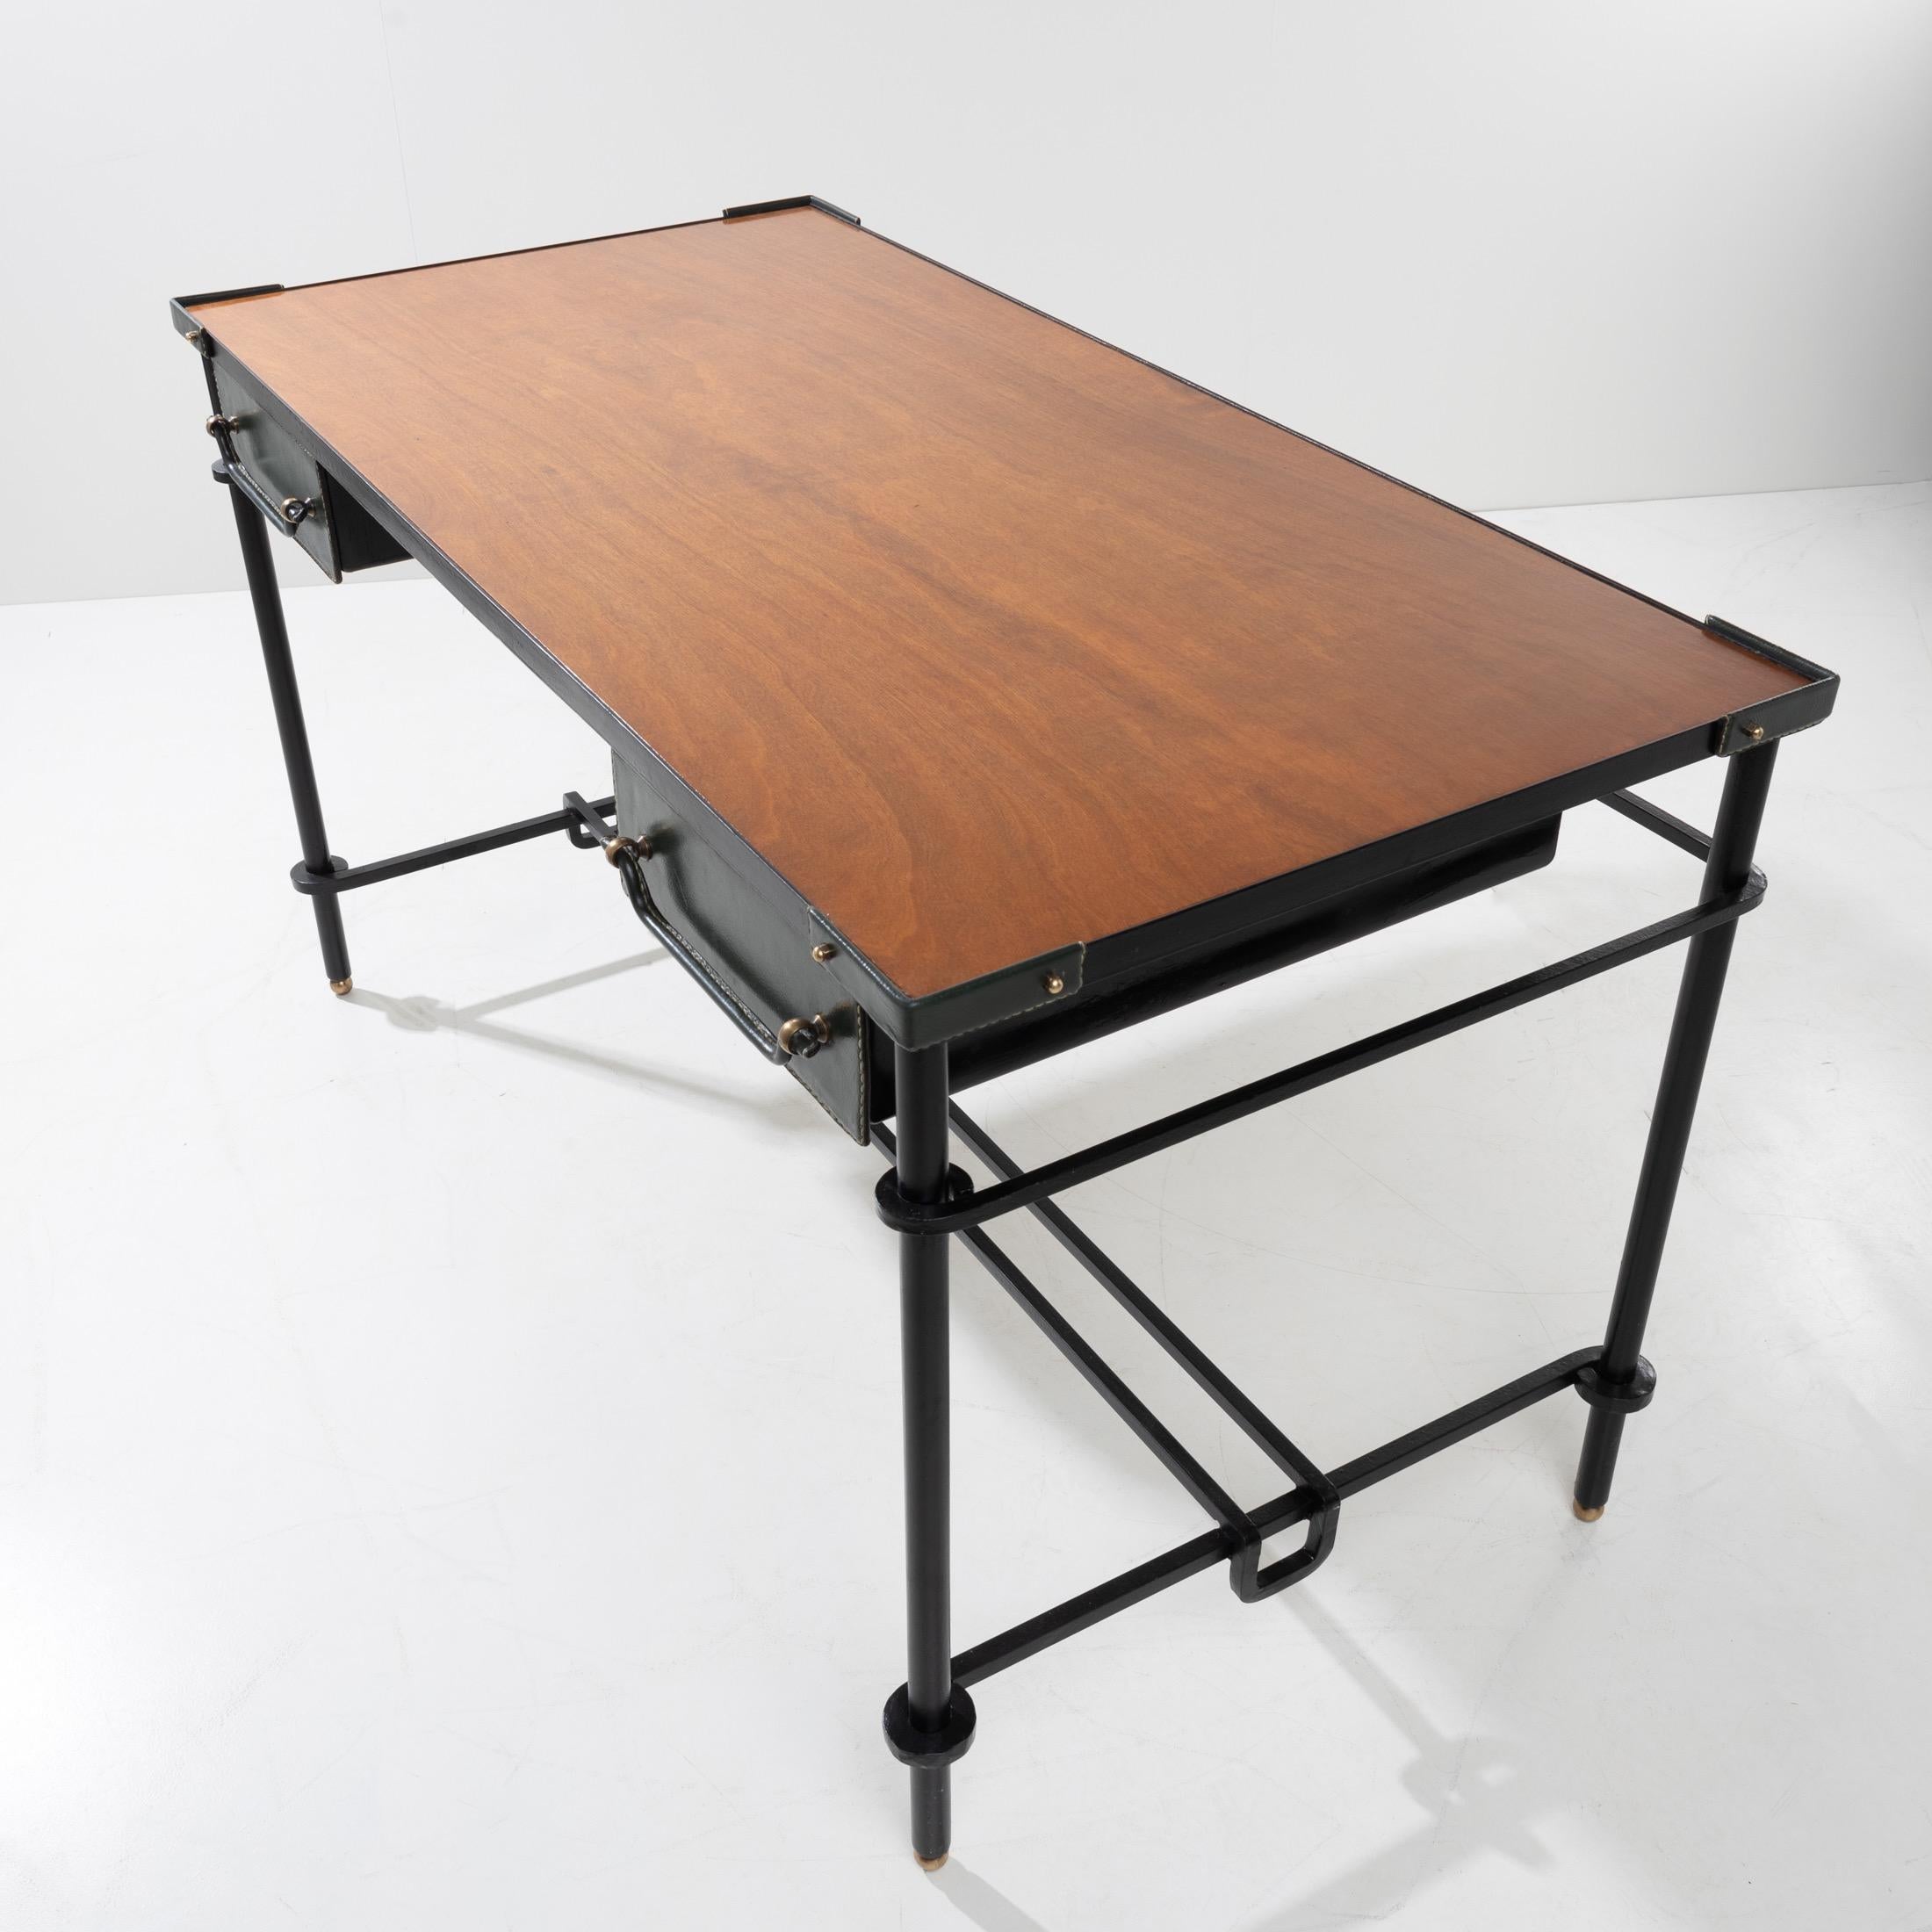 Sehr schöner Schreibtisch aus schwarz patiniertem Schmiedeeisen.
Die 4 Füße, die den Gürtel der oberen Platte tragen, sind ebenfalls aus Stahl.
Sie sind durch einen Abstandshalter im unteren Teil 